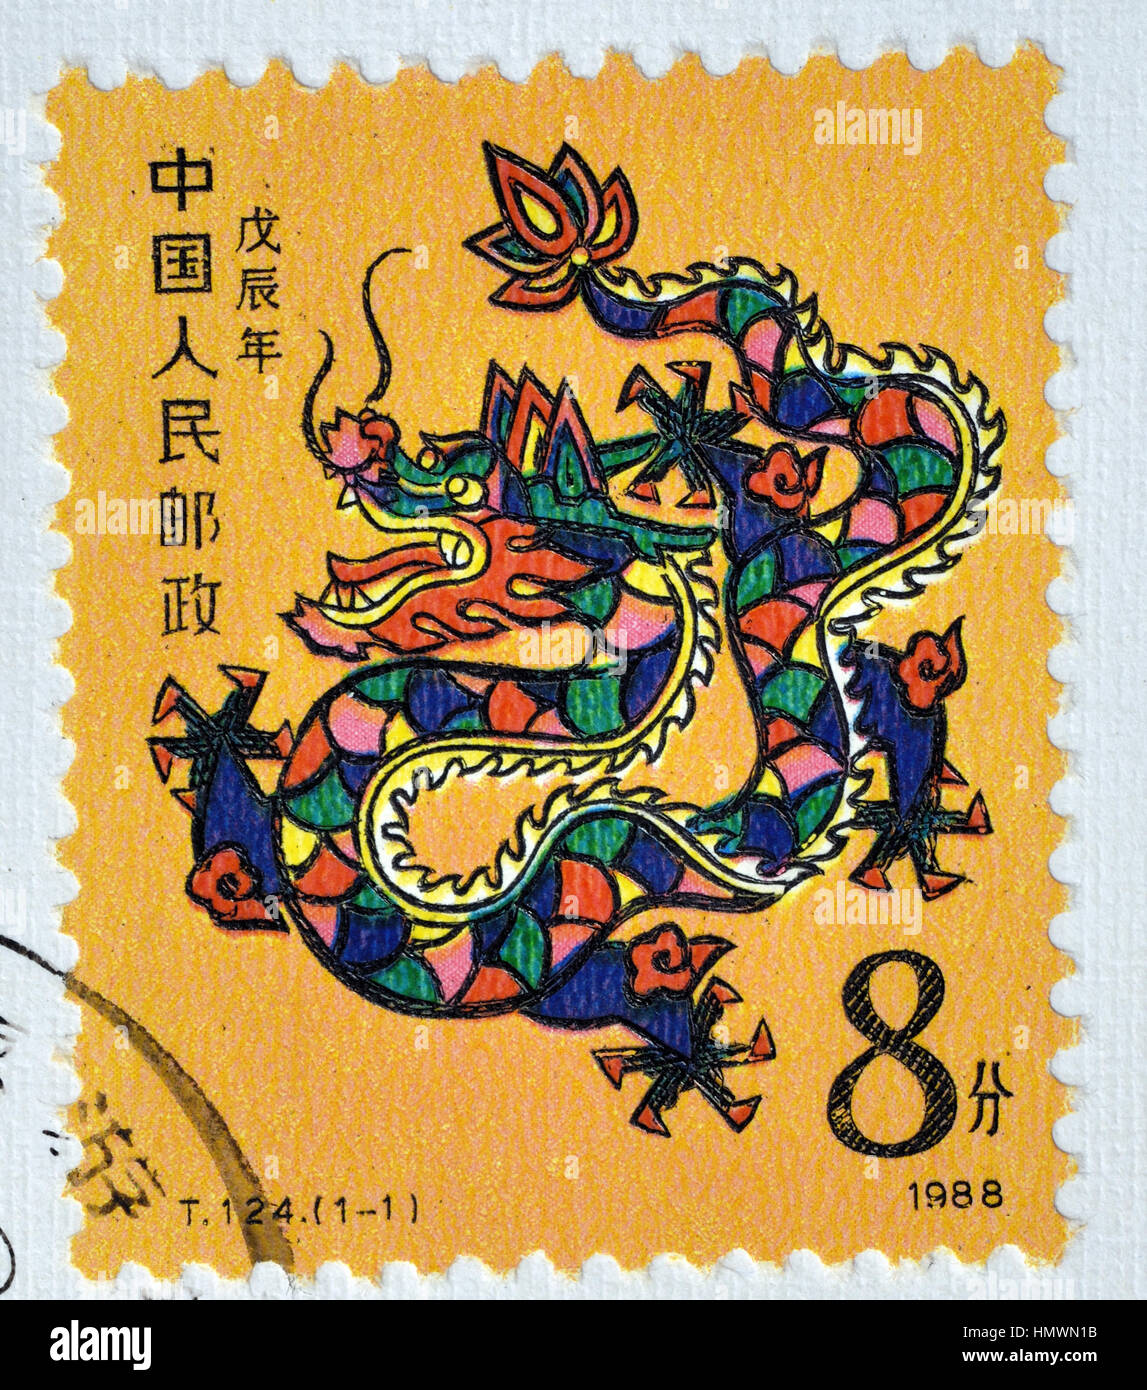 Chine - circa 1988 : timbre imprimé en Chine montre T124 Wuchen Nouvel An lunaire zodiacal Dragon Stamp. vers 1988. Banque D'Images